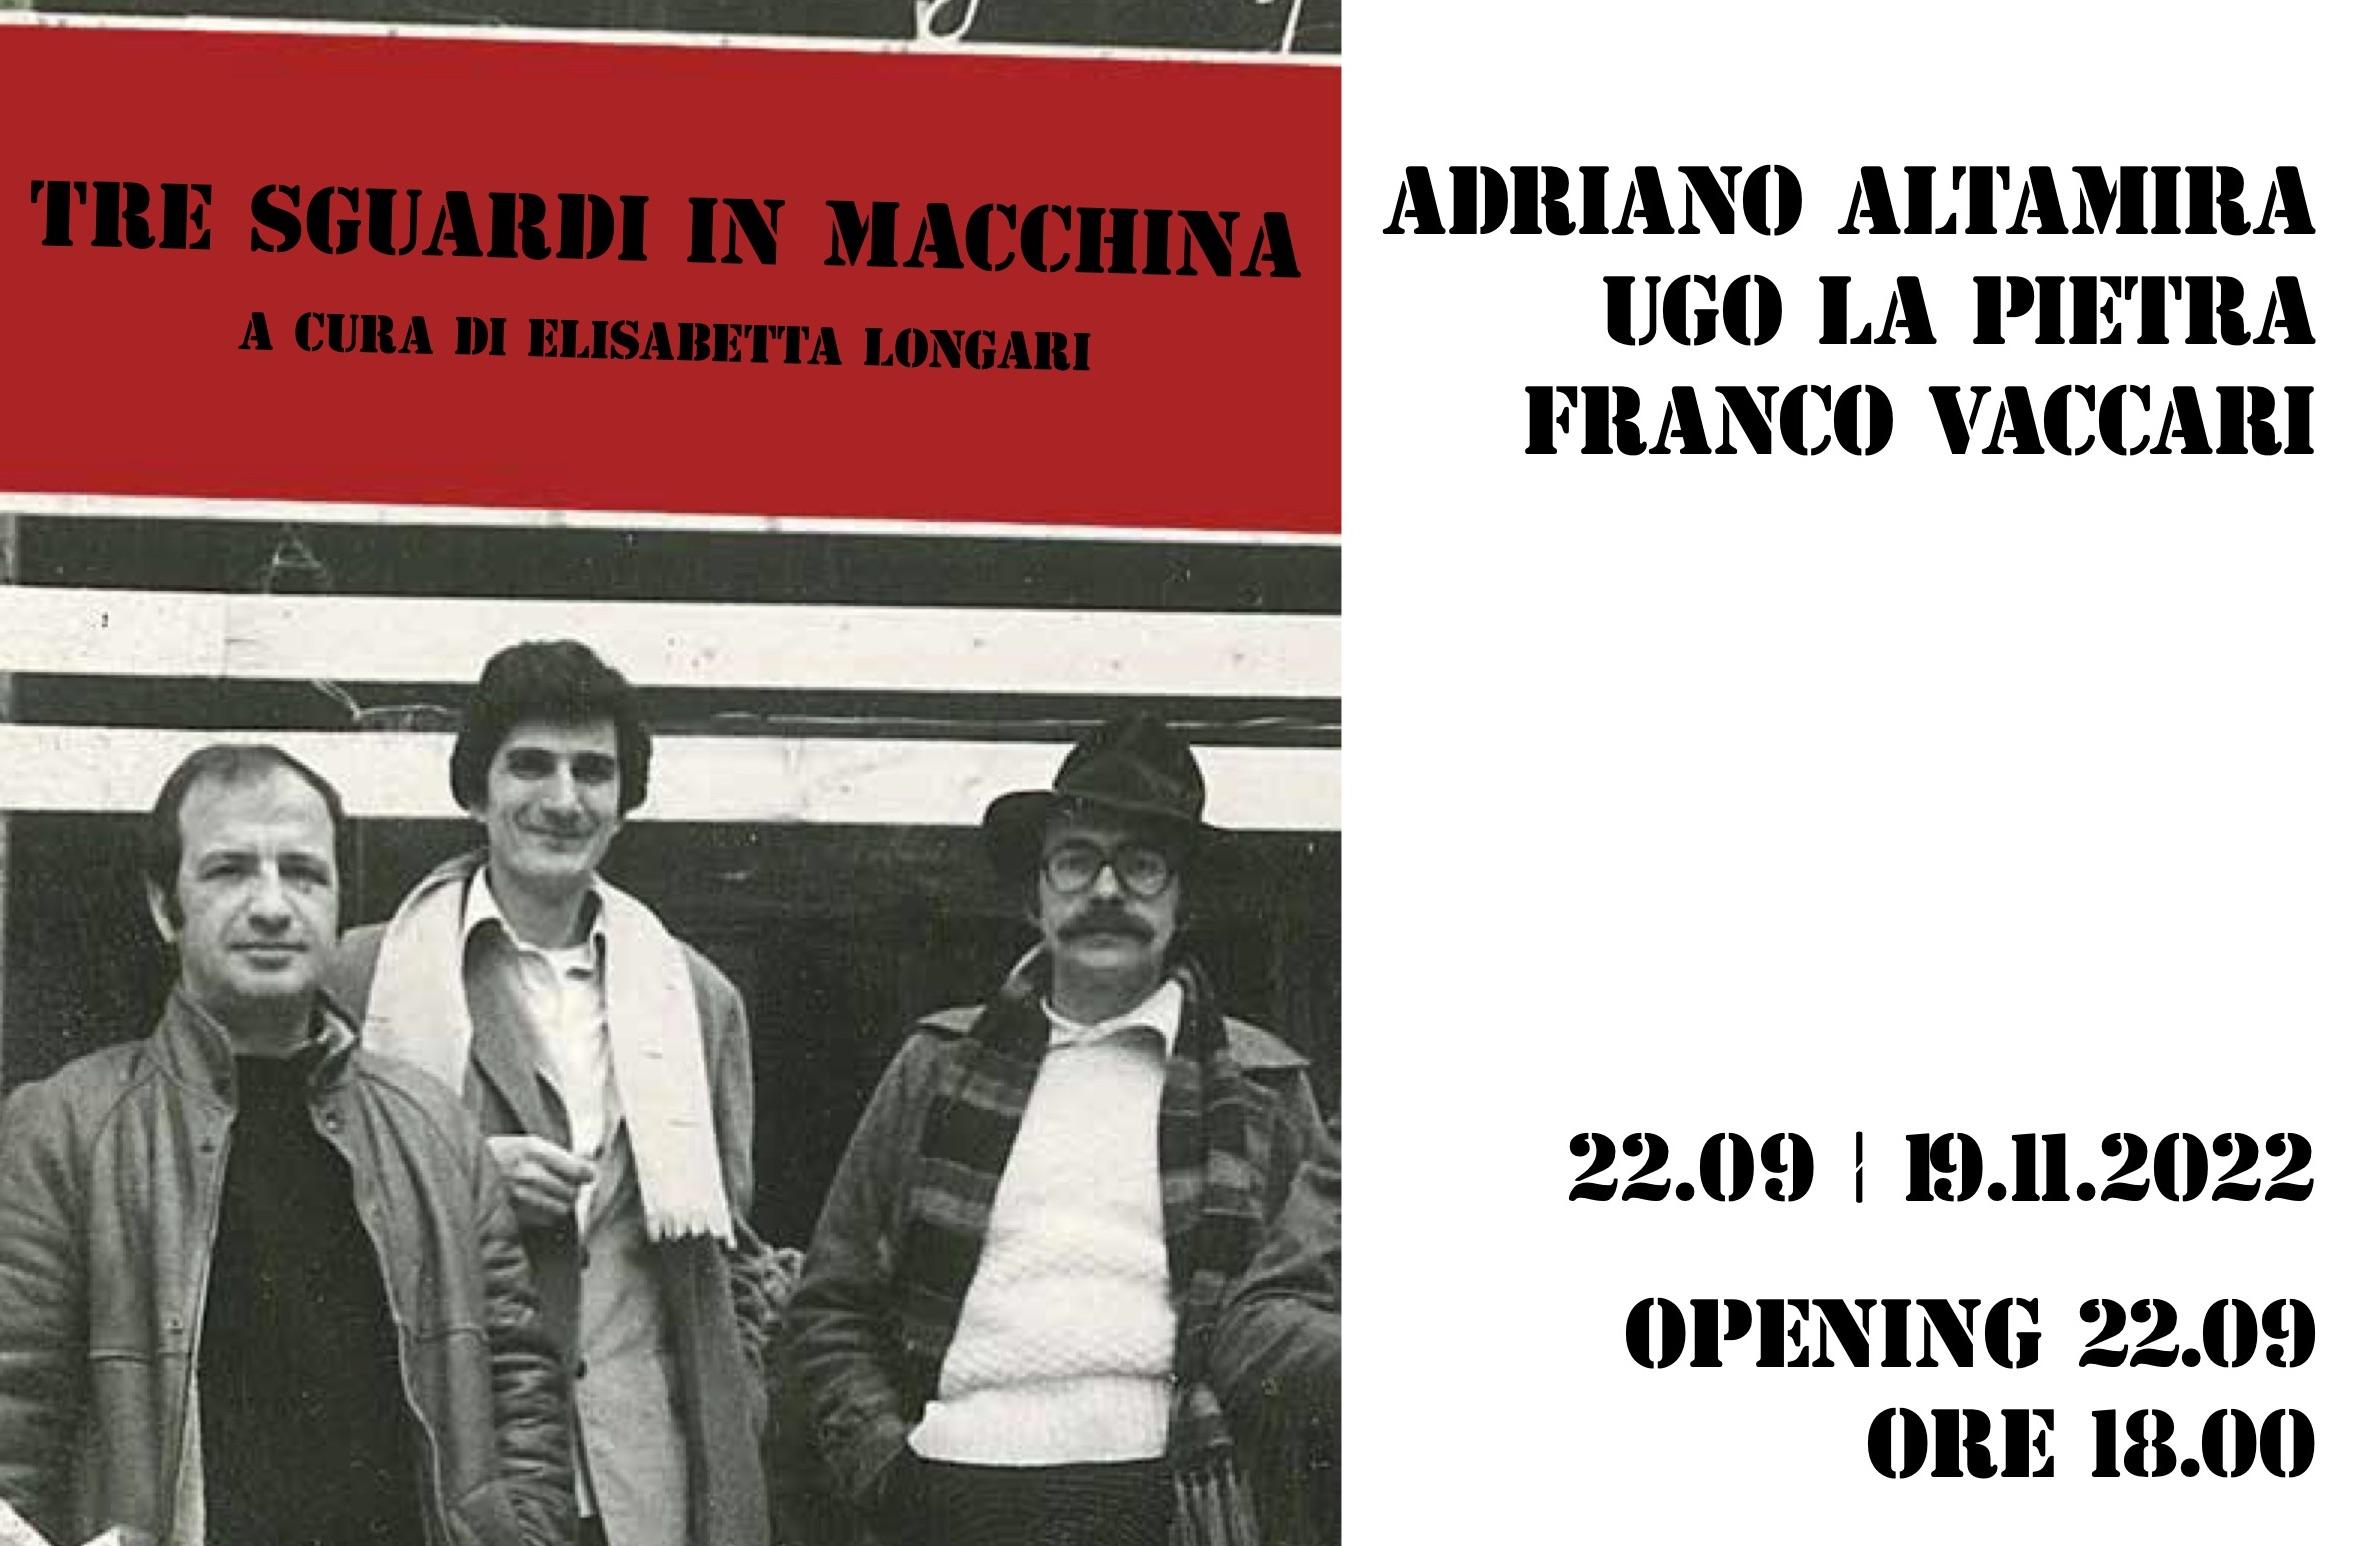 TRE SGUARDI IN MACCHINA | Adriano Altamira, Ugo La Pietra, Franco Vaccari